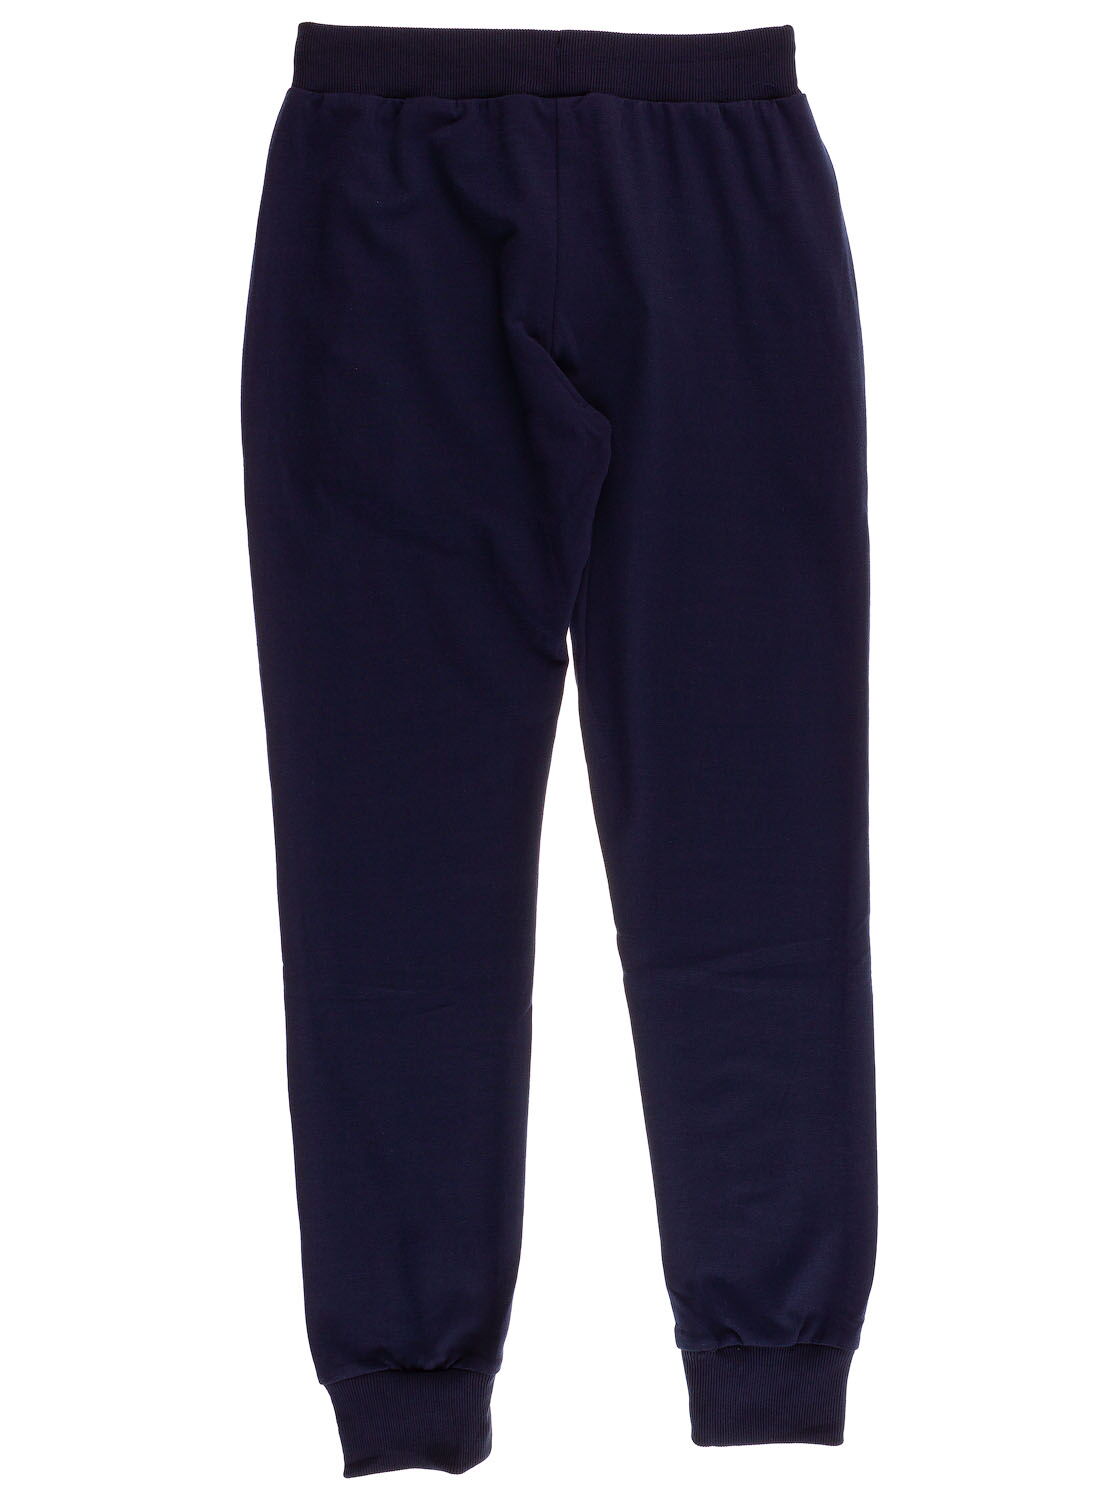 Спортивные штаны для мальчика Sincere синие 2317 - фото